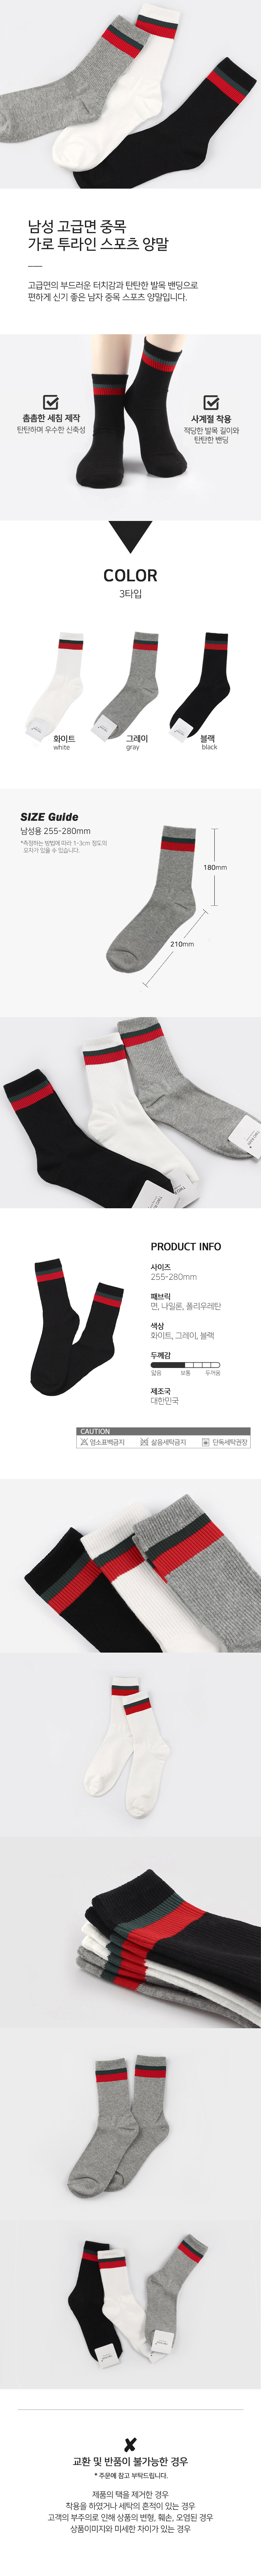 socks_00111.jpg